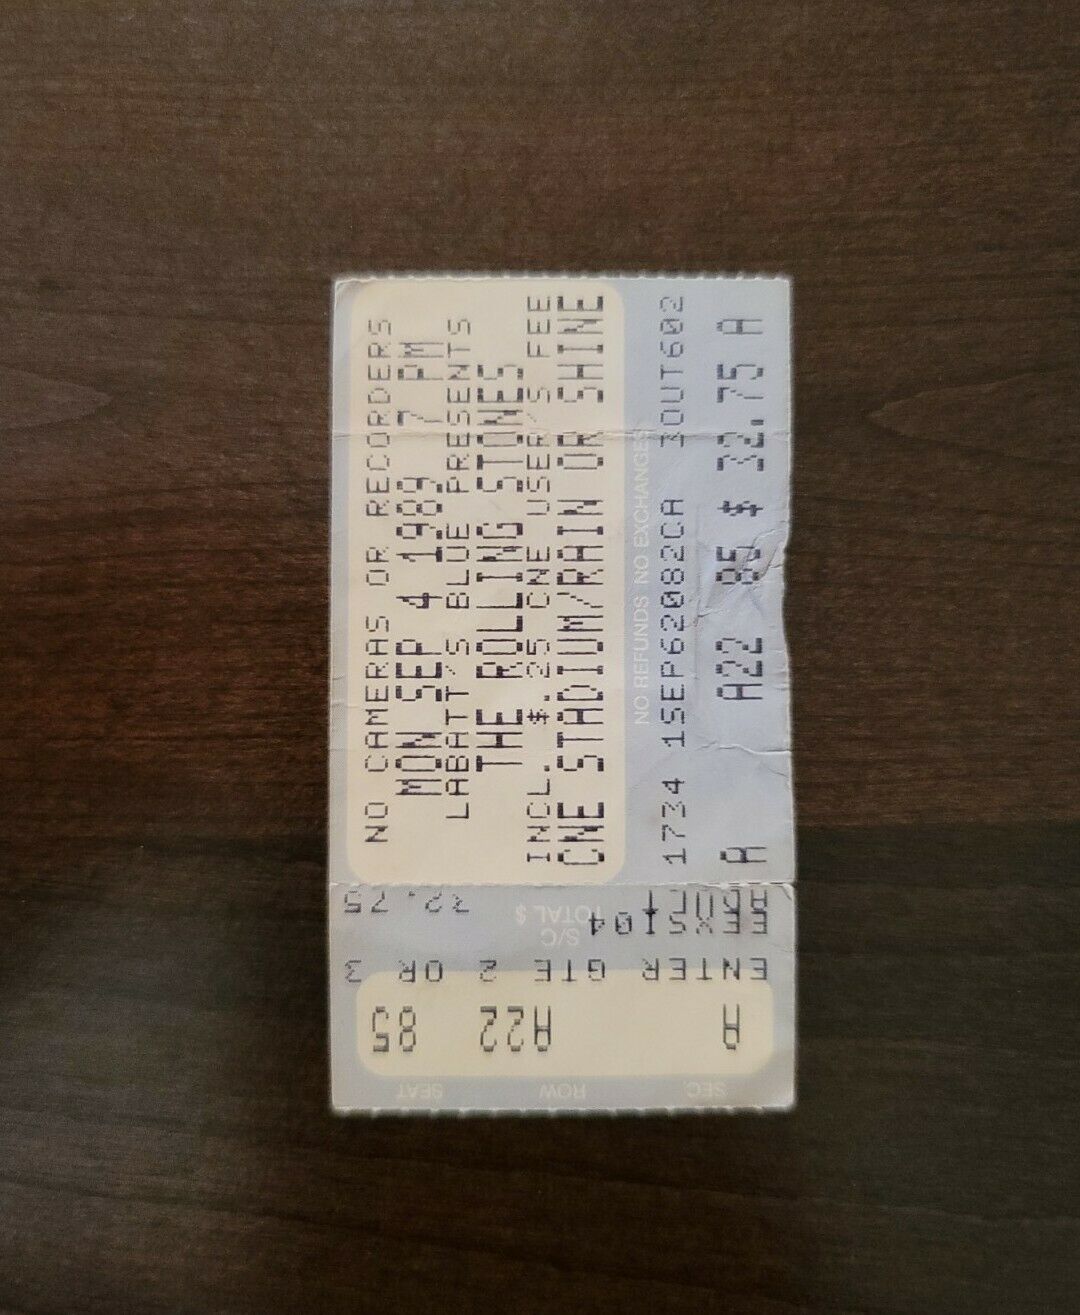 Rolling Stones 1989, Toronto CNE Stadium Original Concert Ticket Stub